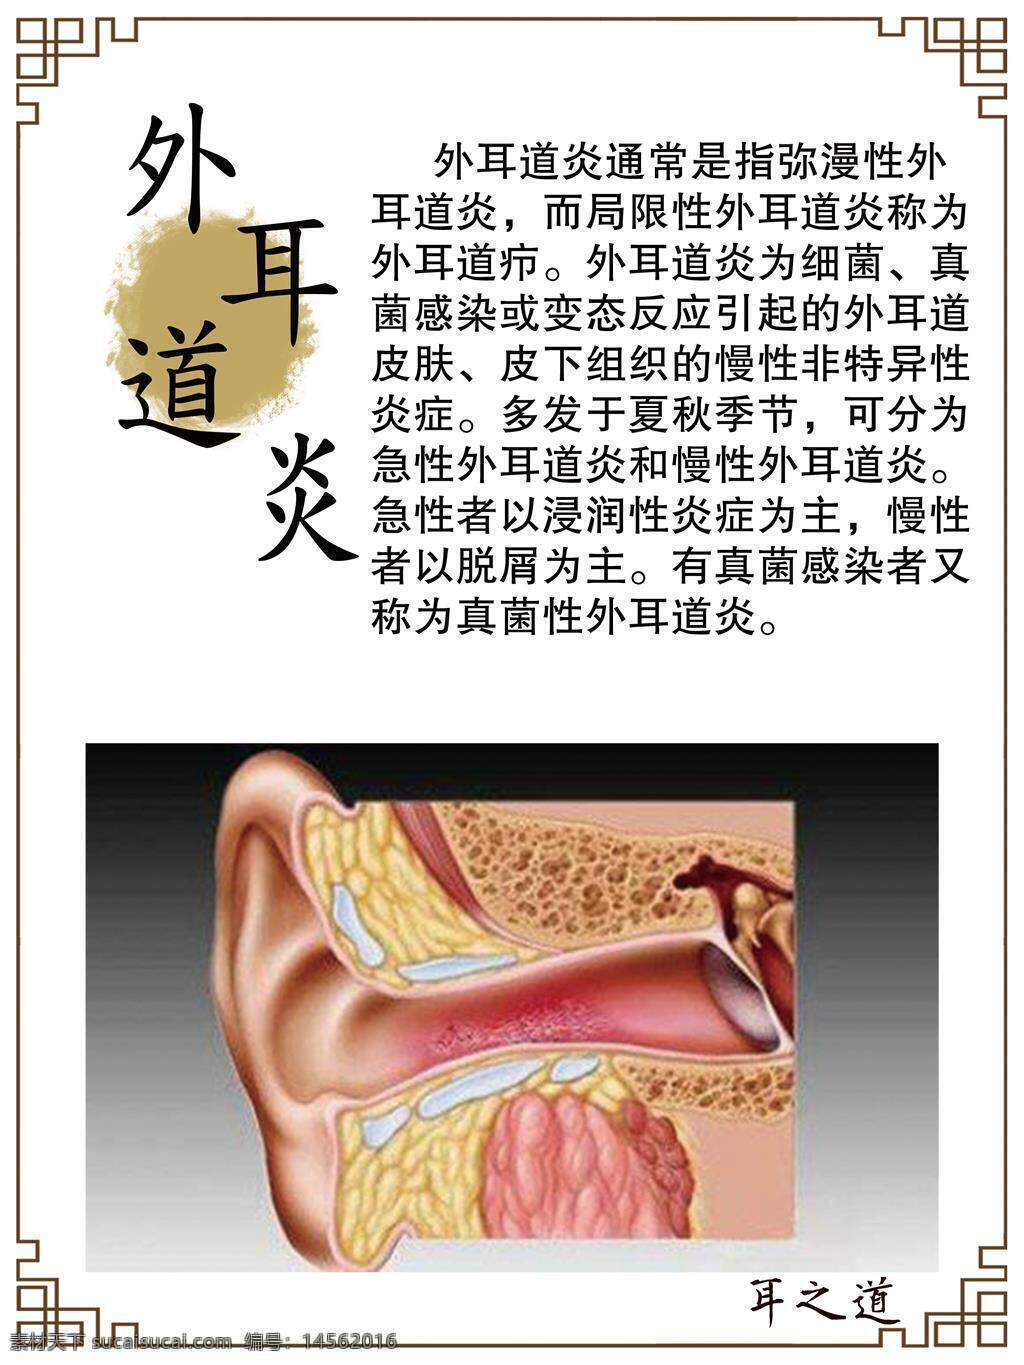 外耳道后壁,医疗图片素材_高清图片素材